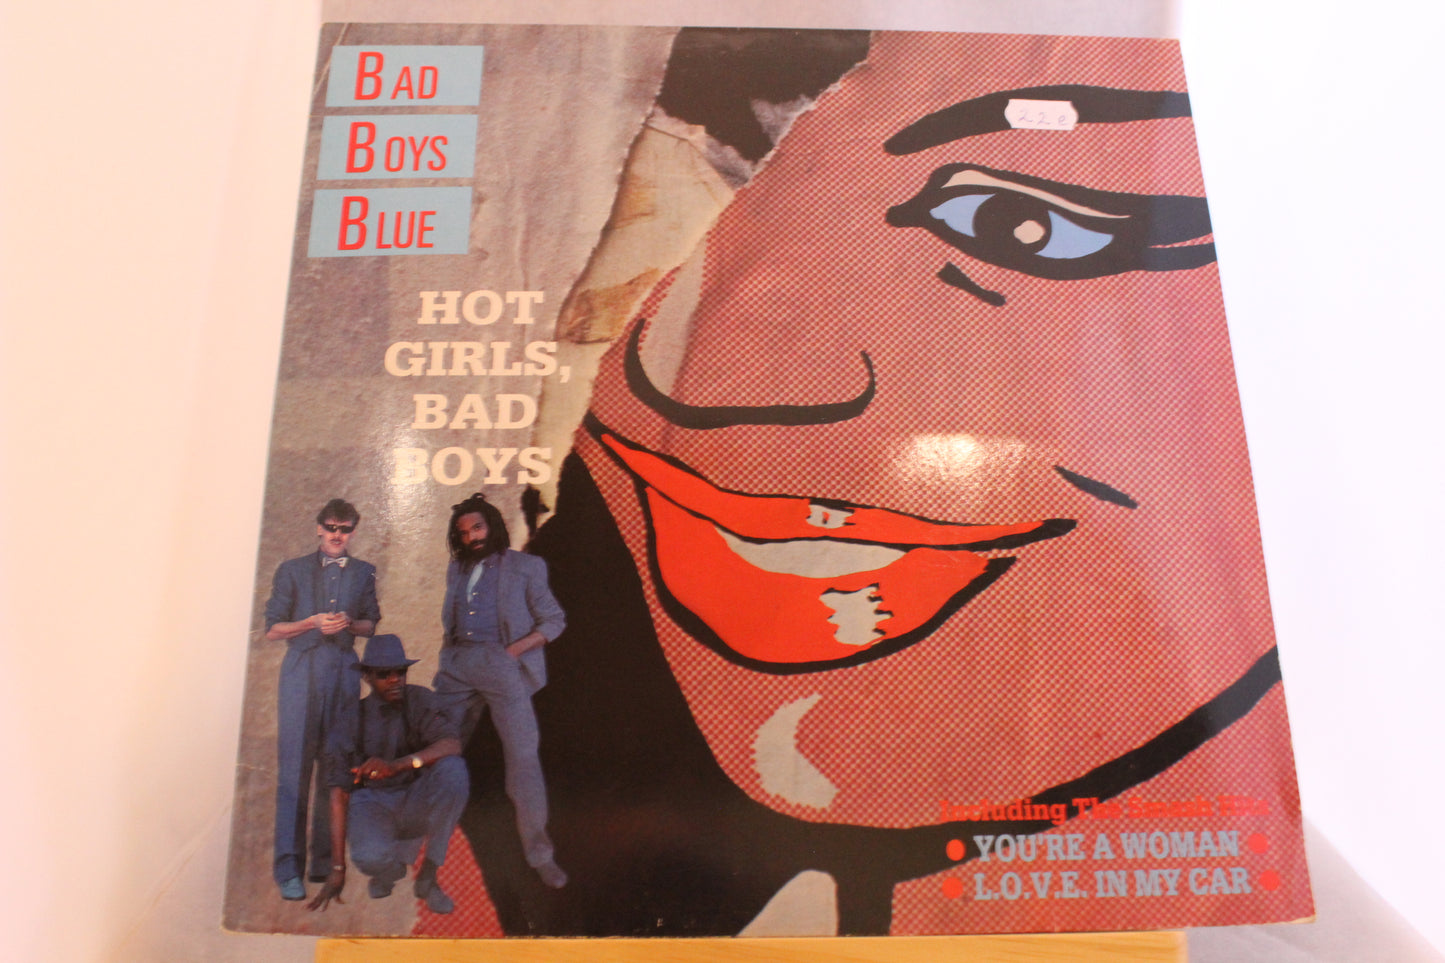 Bad boys blue Hot girls bad boys lp-levy